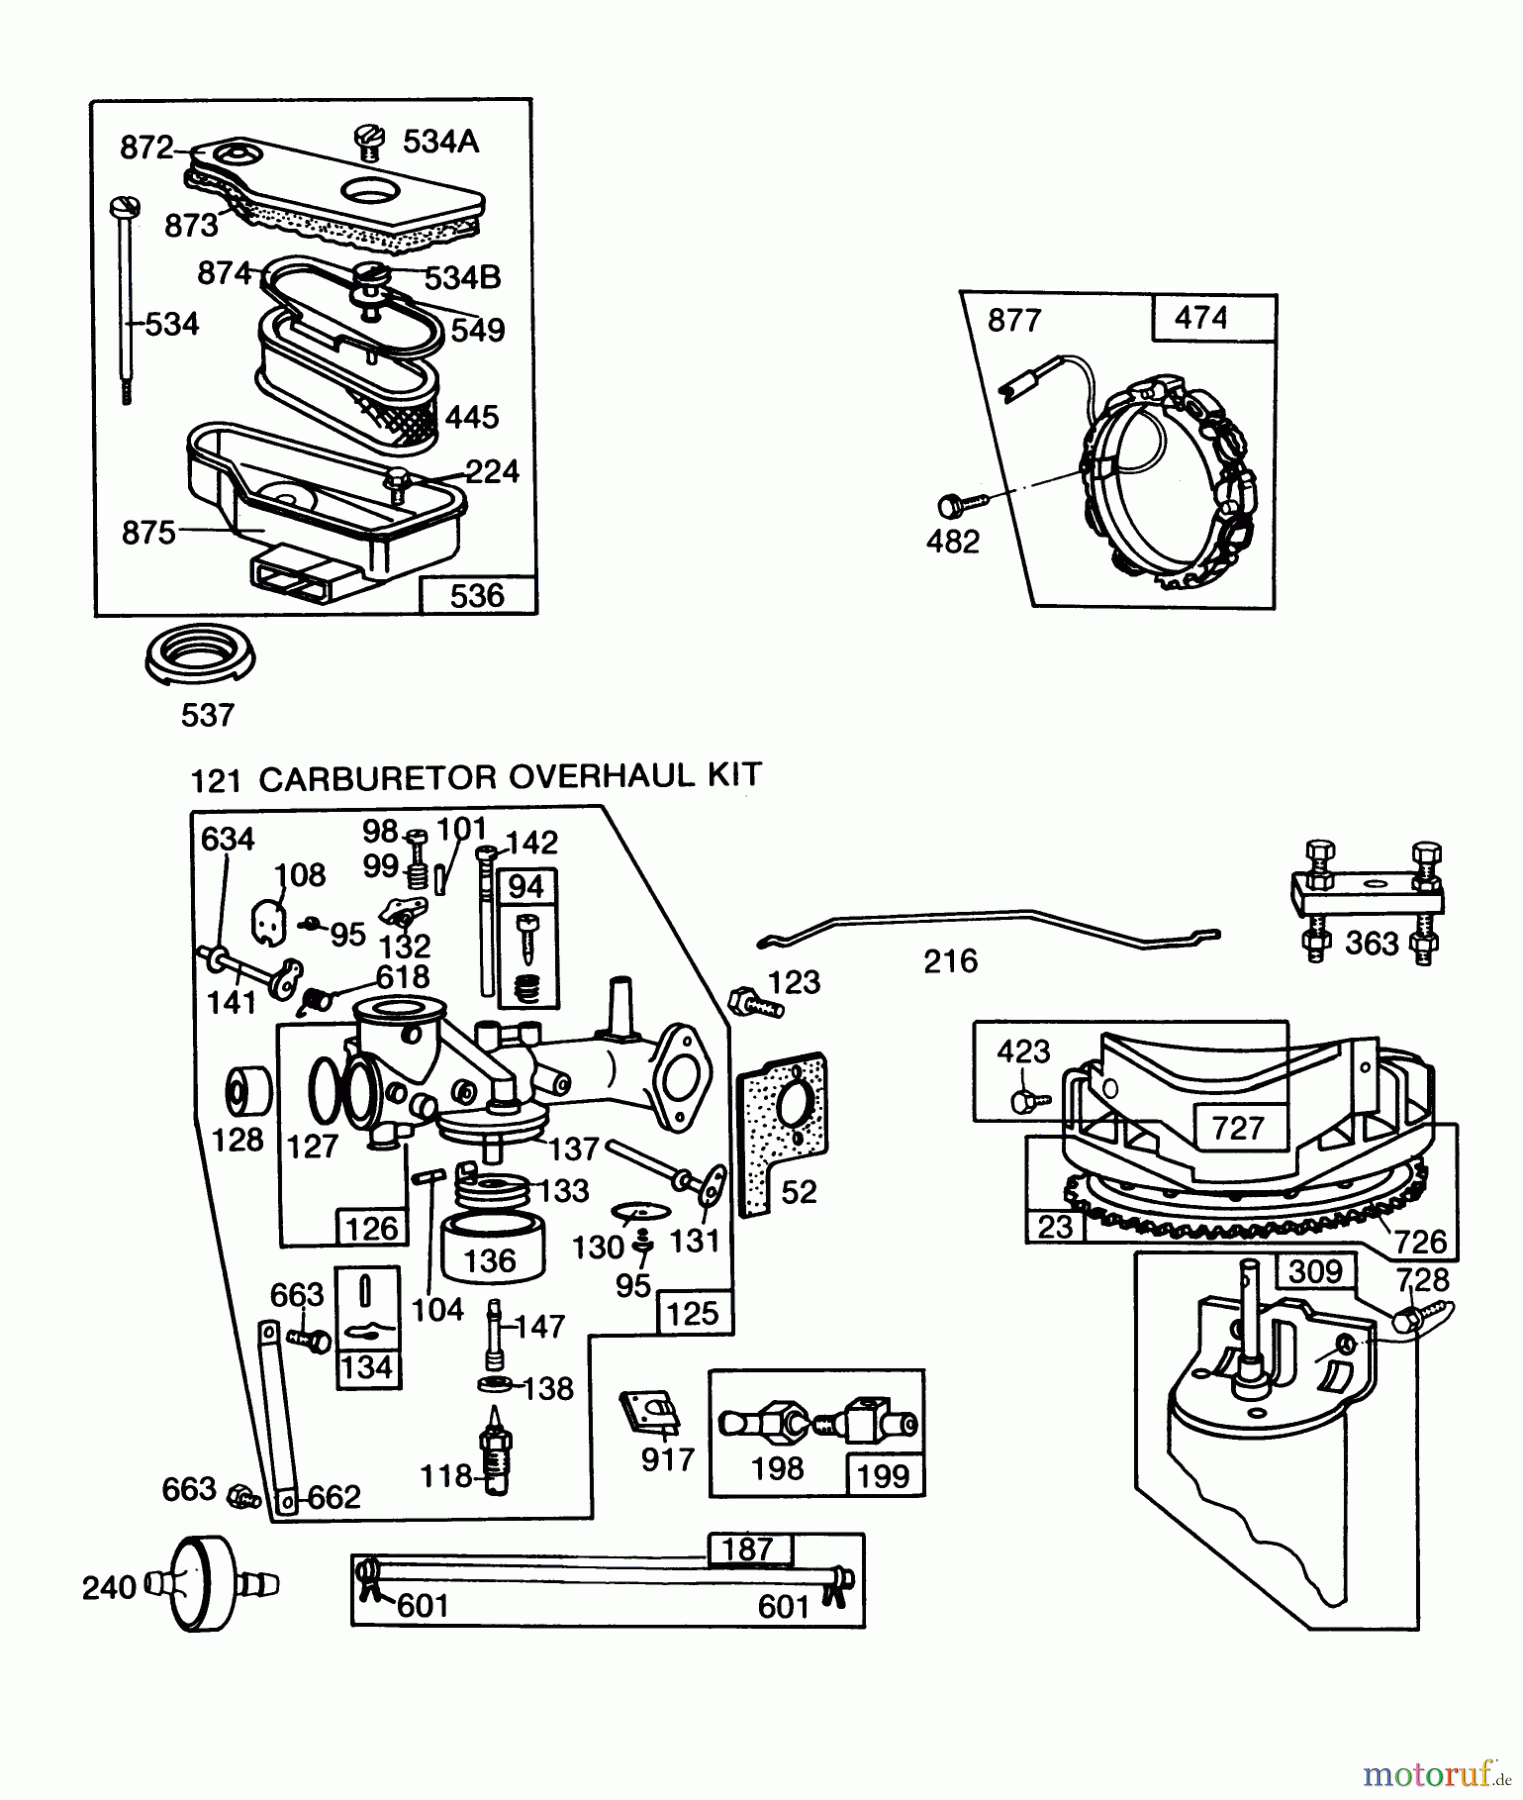  Toro Neu Mowers, Lawn & Garden Tractor Seite 1 57360 (11-32) - Toro 11-32 Lawn Tractor, 1985 (5000001-5999999) ENGINE BRIGGS & STRATTON MODEL 253707-0157-01 (MODEL 57360) #2